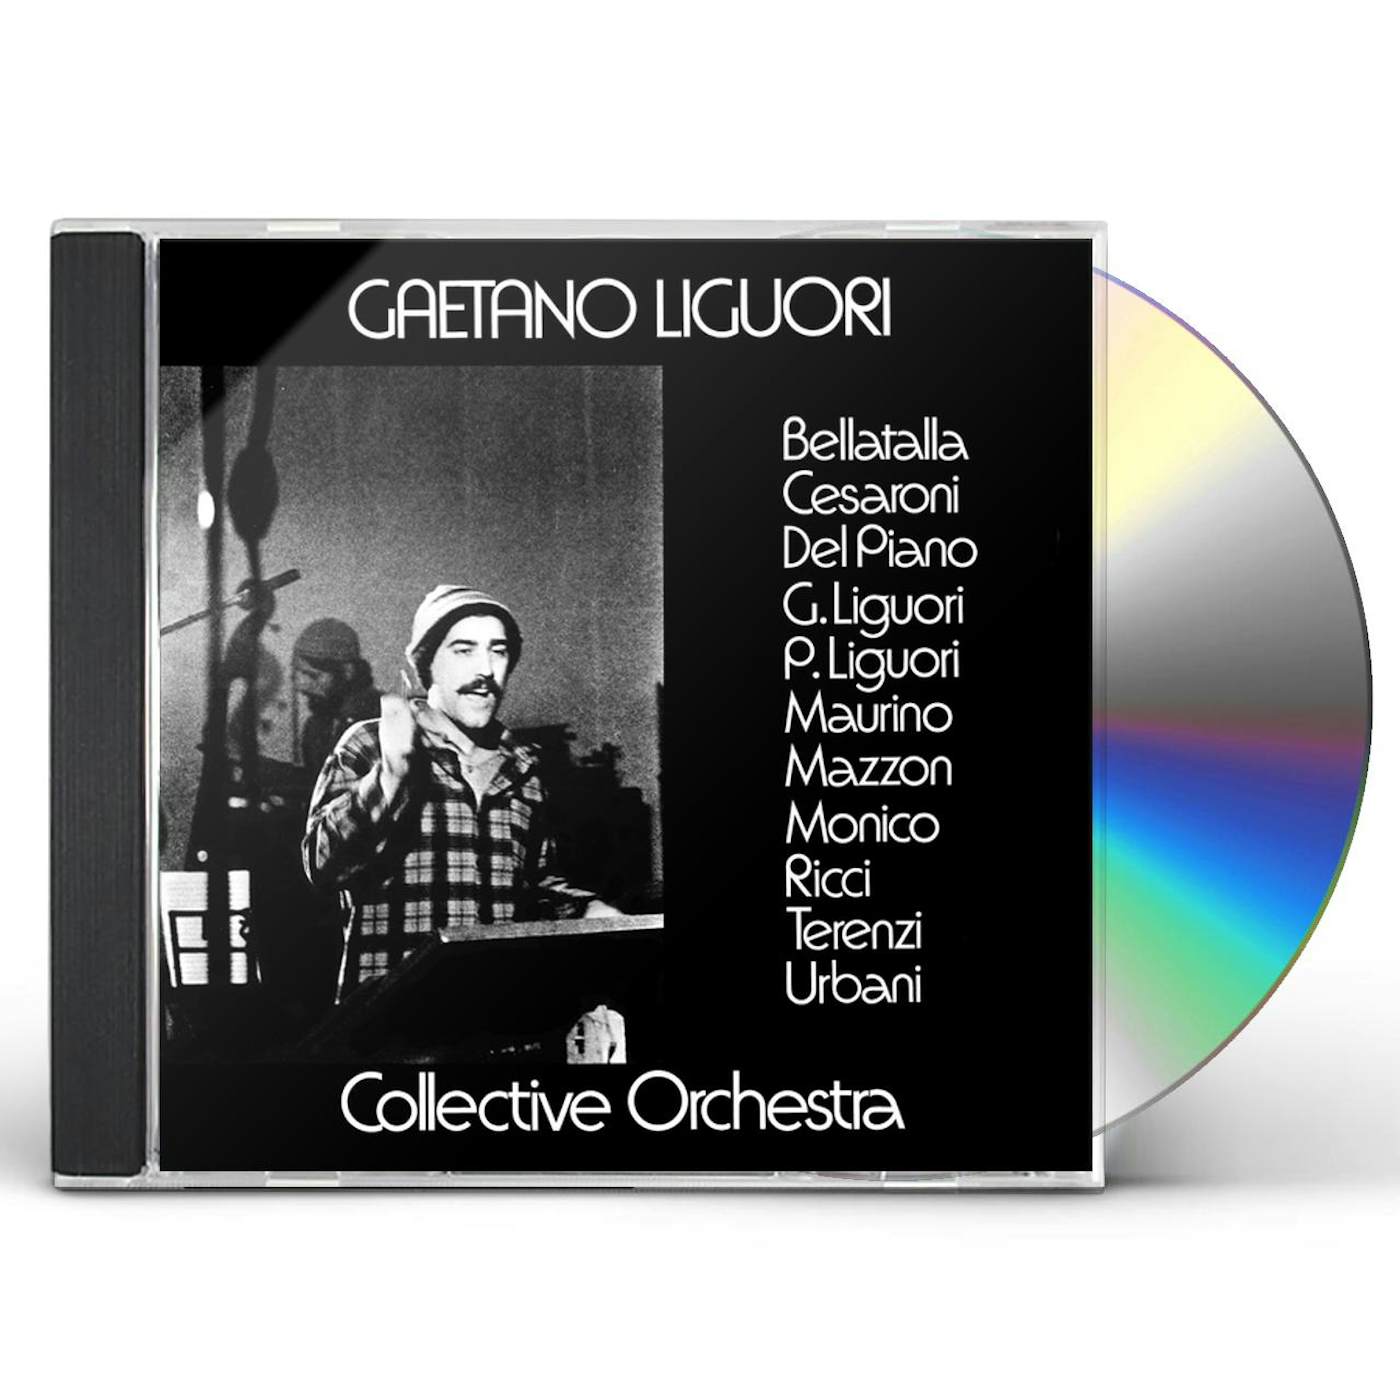 Gaetano Collective Orchestra Liguori GAETANO LIGUORI COLLECTIVE ORCHESTRA CD